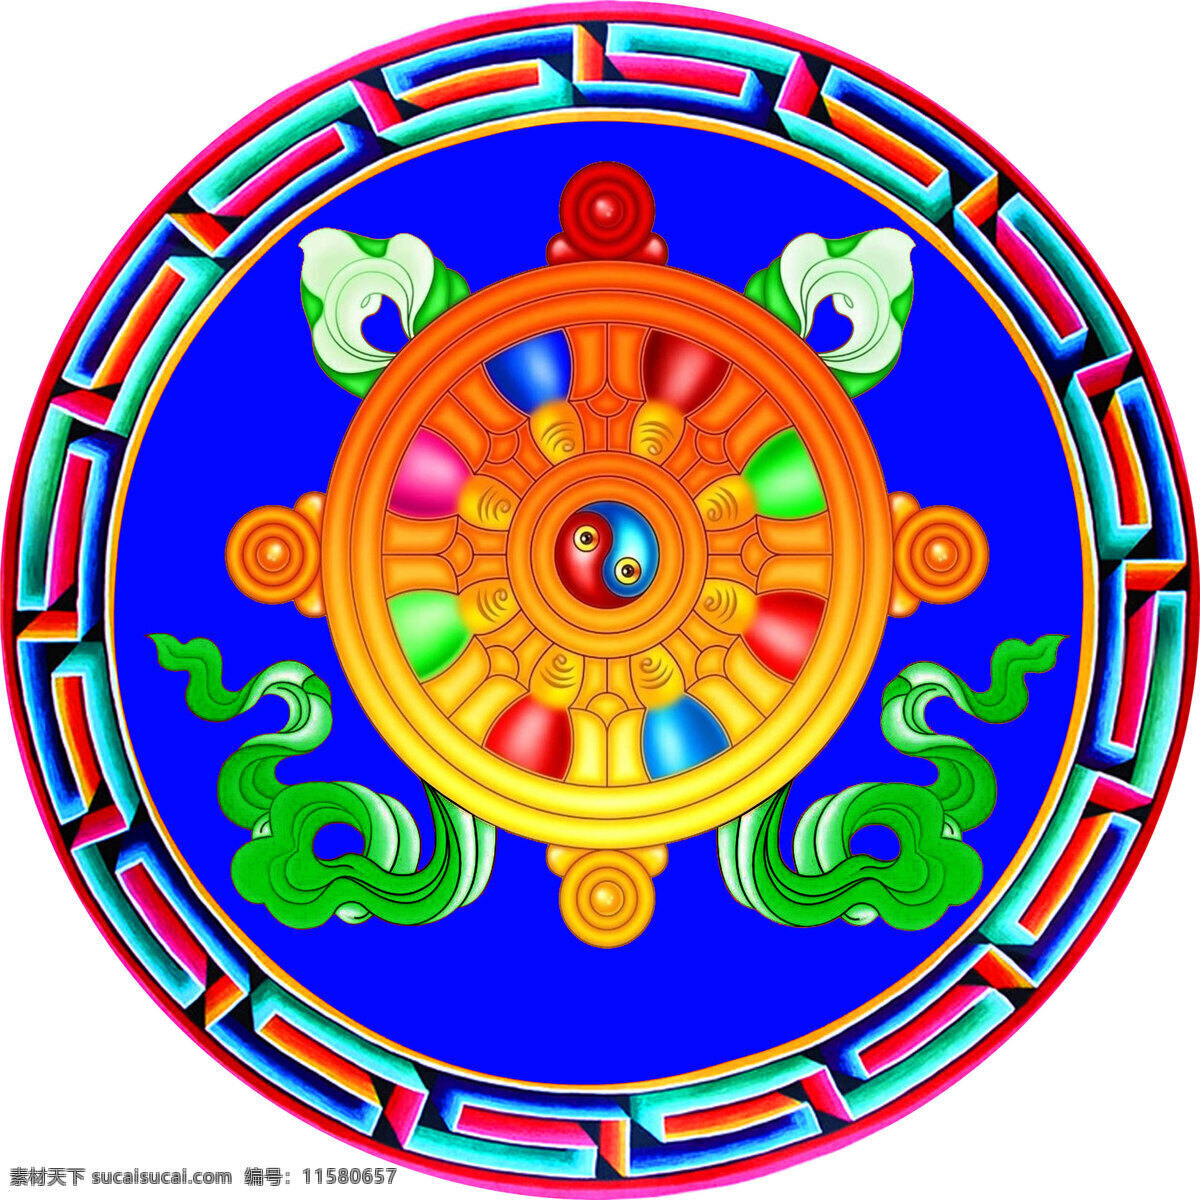 八宝 藏八宝 吉祥八宝 金轮 西藏 图案 花边 宗教信仰 文化艺术